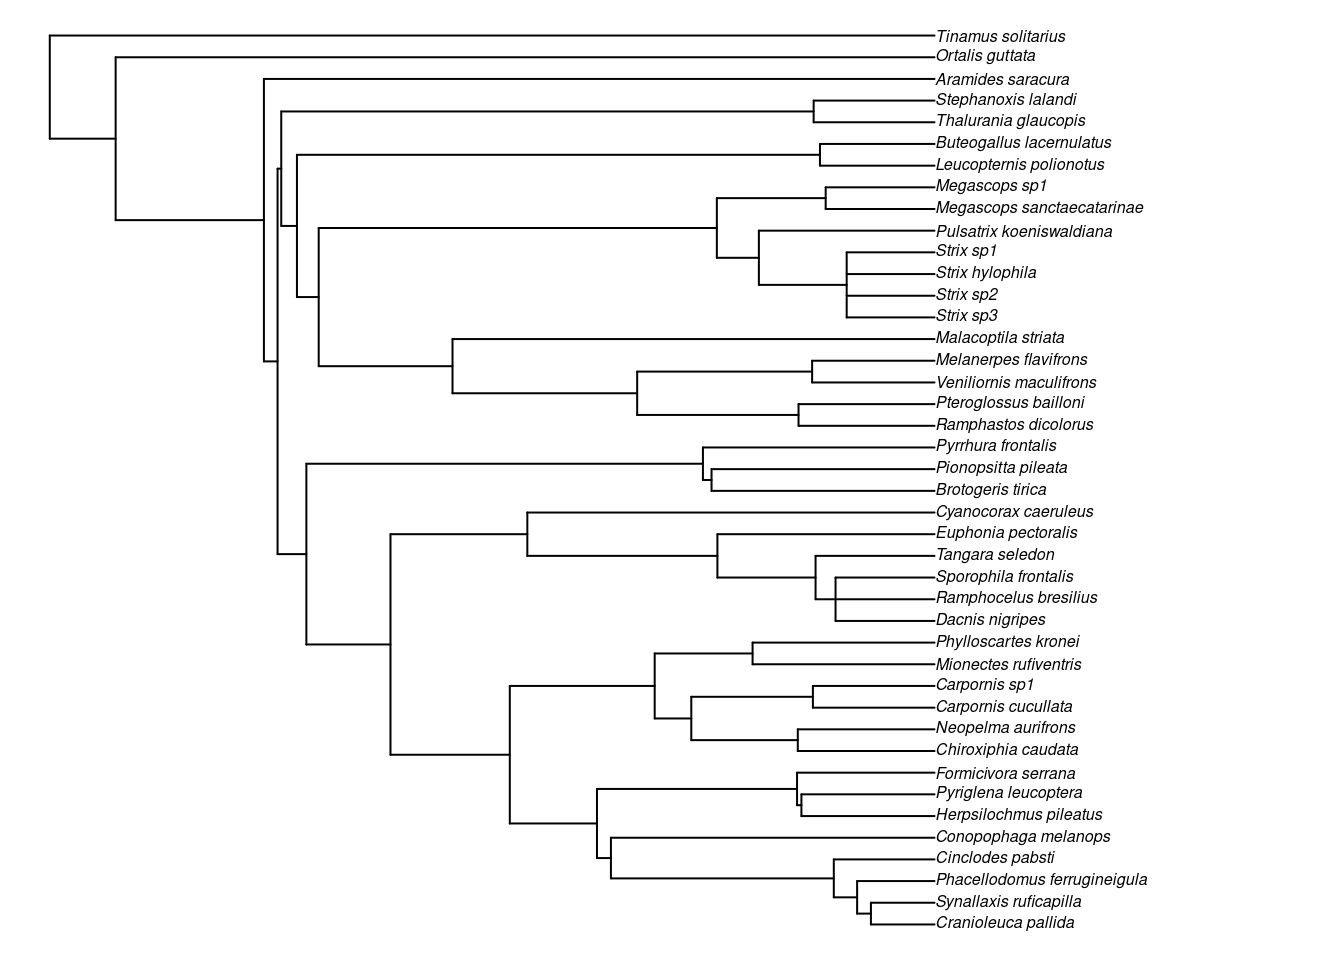 Filogenia de espécies de aves endêmicas da Mata Atlântica, com adição de espécies.